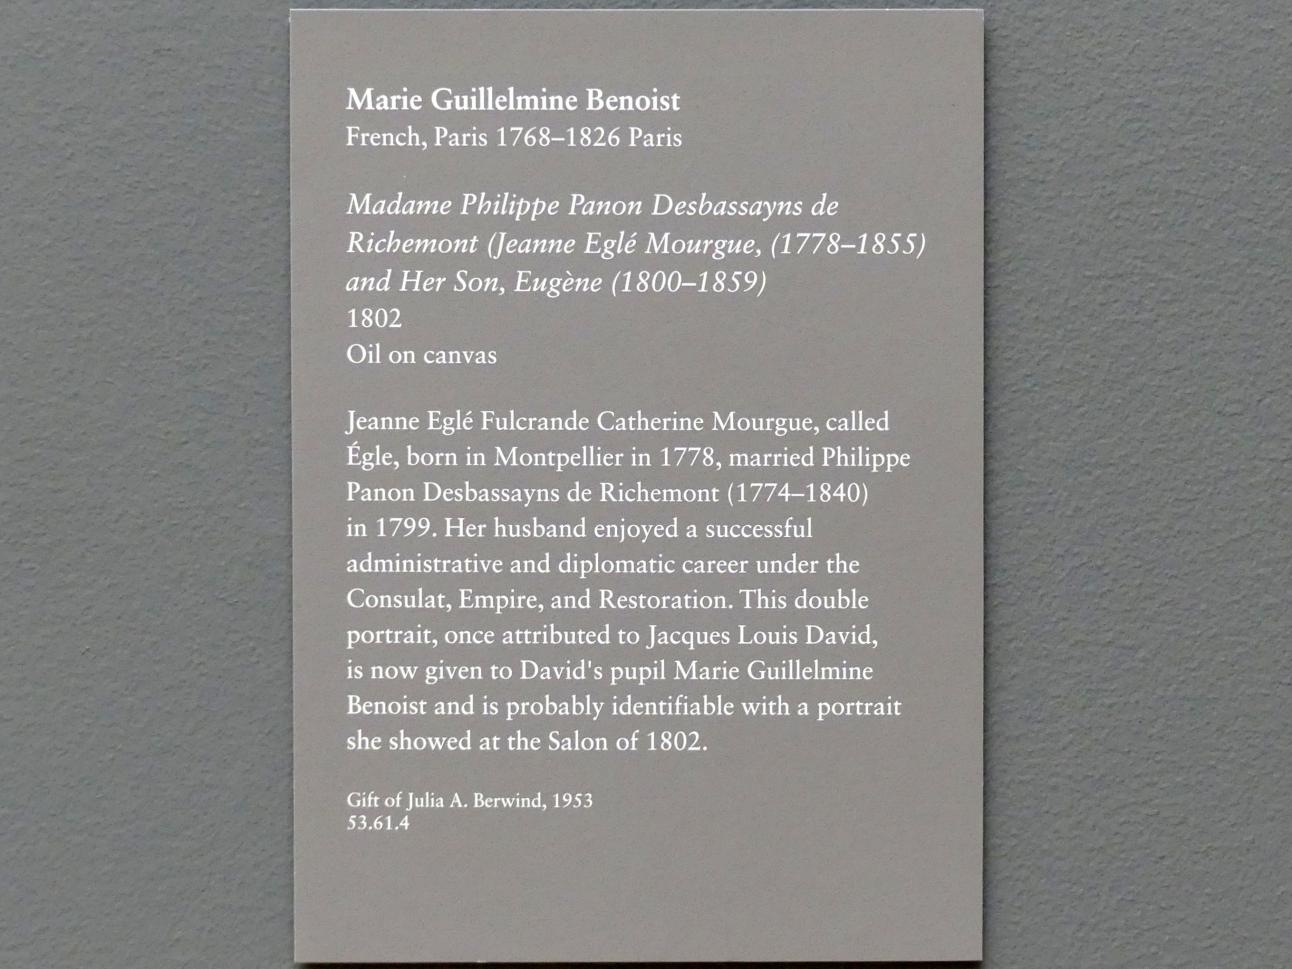 Marie-Guillemine Benoist (1799–1802), Madame Philippe Panon Desbassayns de Richemont (Jeanne Eglé Mourgue, 1778-1855) und ihr Sohn Eugène (1800-1859), New York, Metropolitan Museum of Art (Met), Saal 629, 1802, Bild 2/2